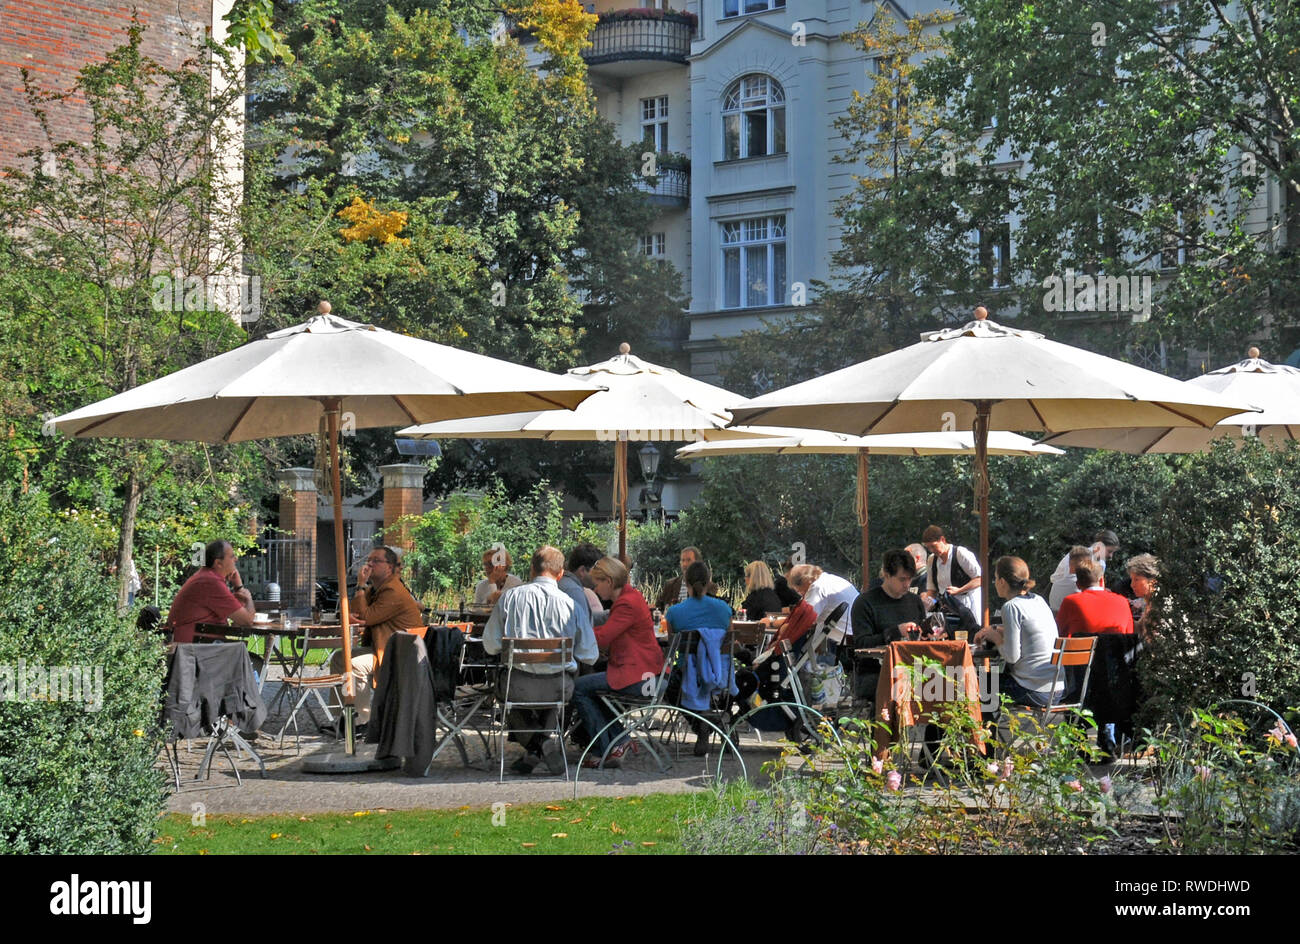 Cafe Wintergarten in the Literaturhaus on Fasanenstrasse near Kurfurstendamm, Berlin, Germany Stock Photo